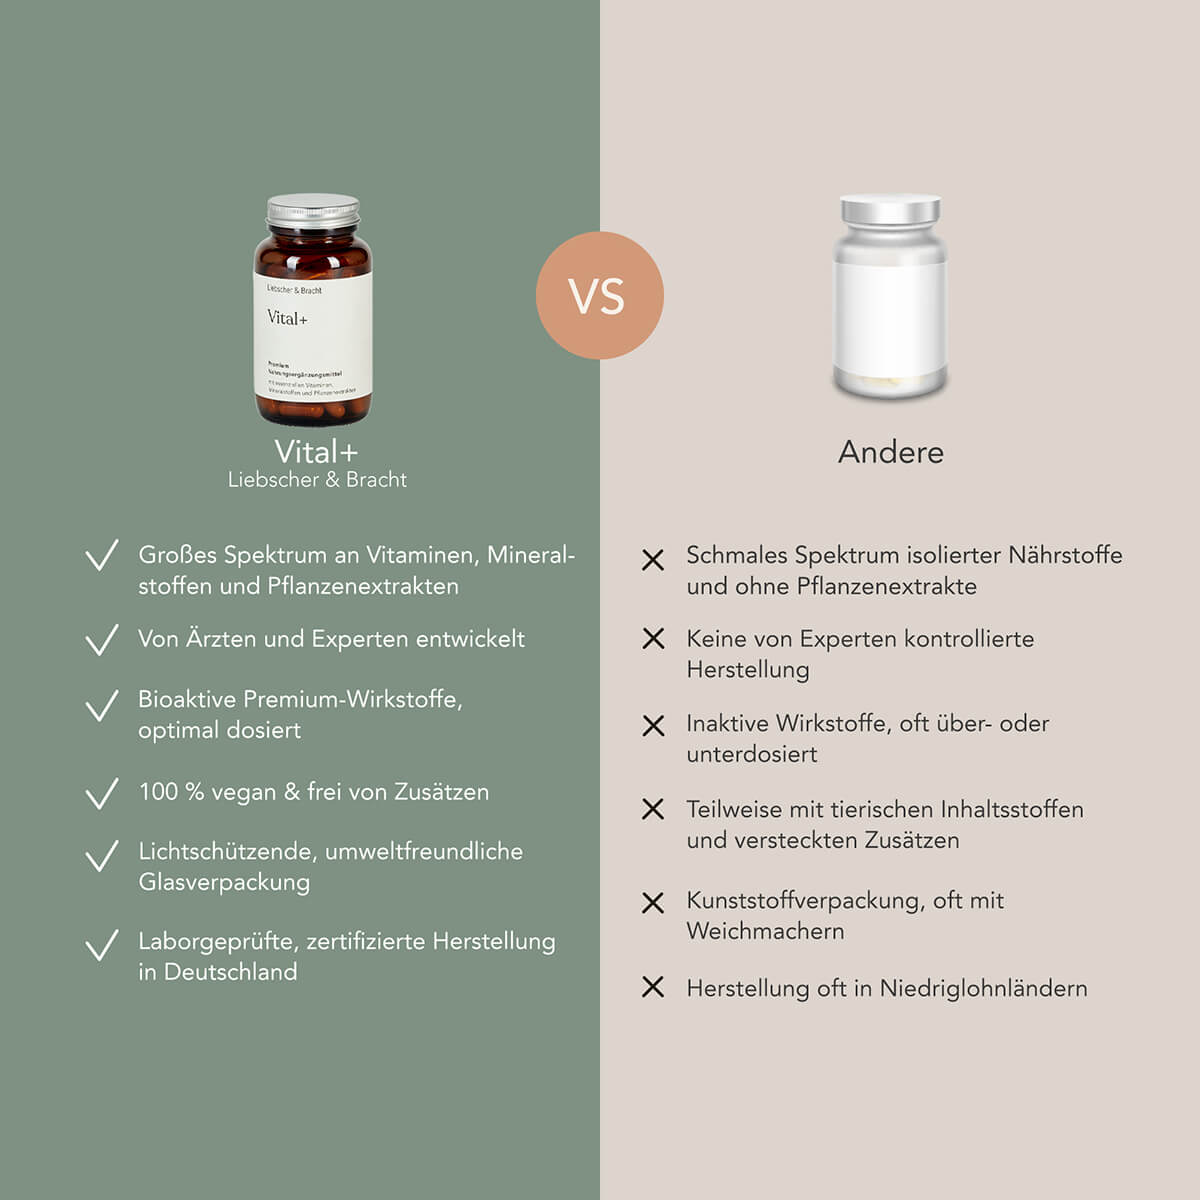 Vergleichsbild:  Vital+  Nahrungsergänzungsmittel von Liebscher & Bracht im Vergleich zu anderen Nahrungsergänzungsmitteln.